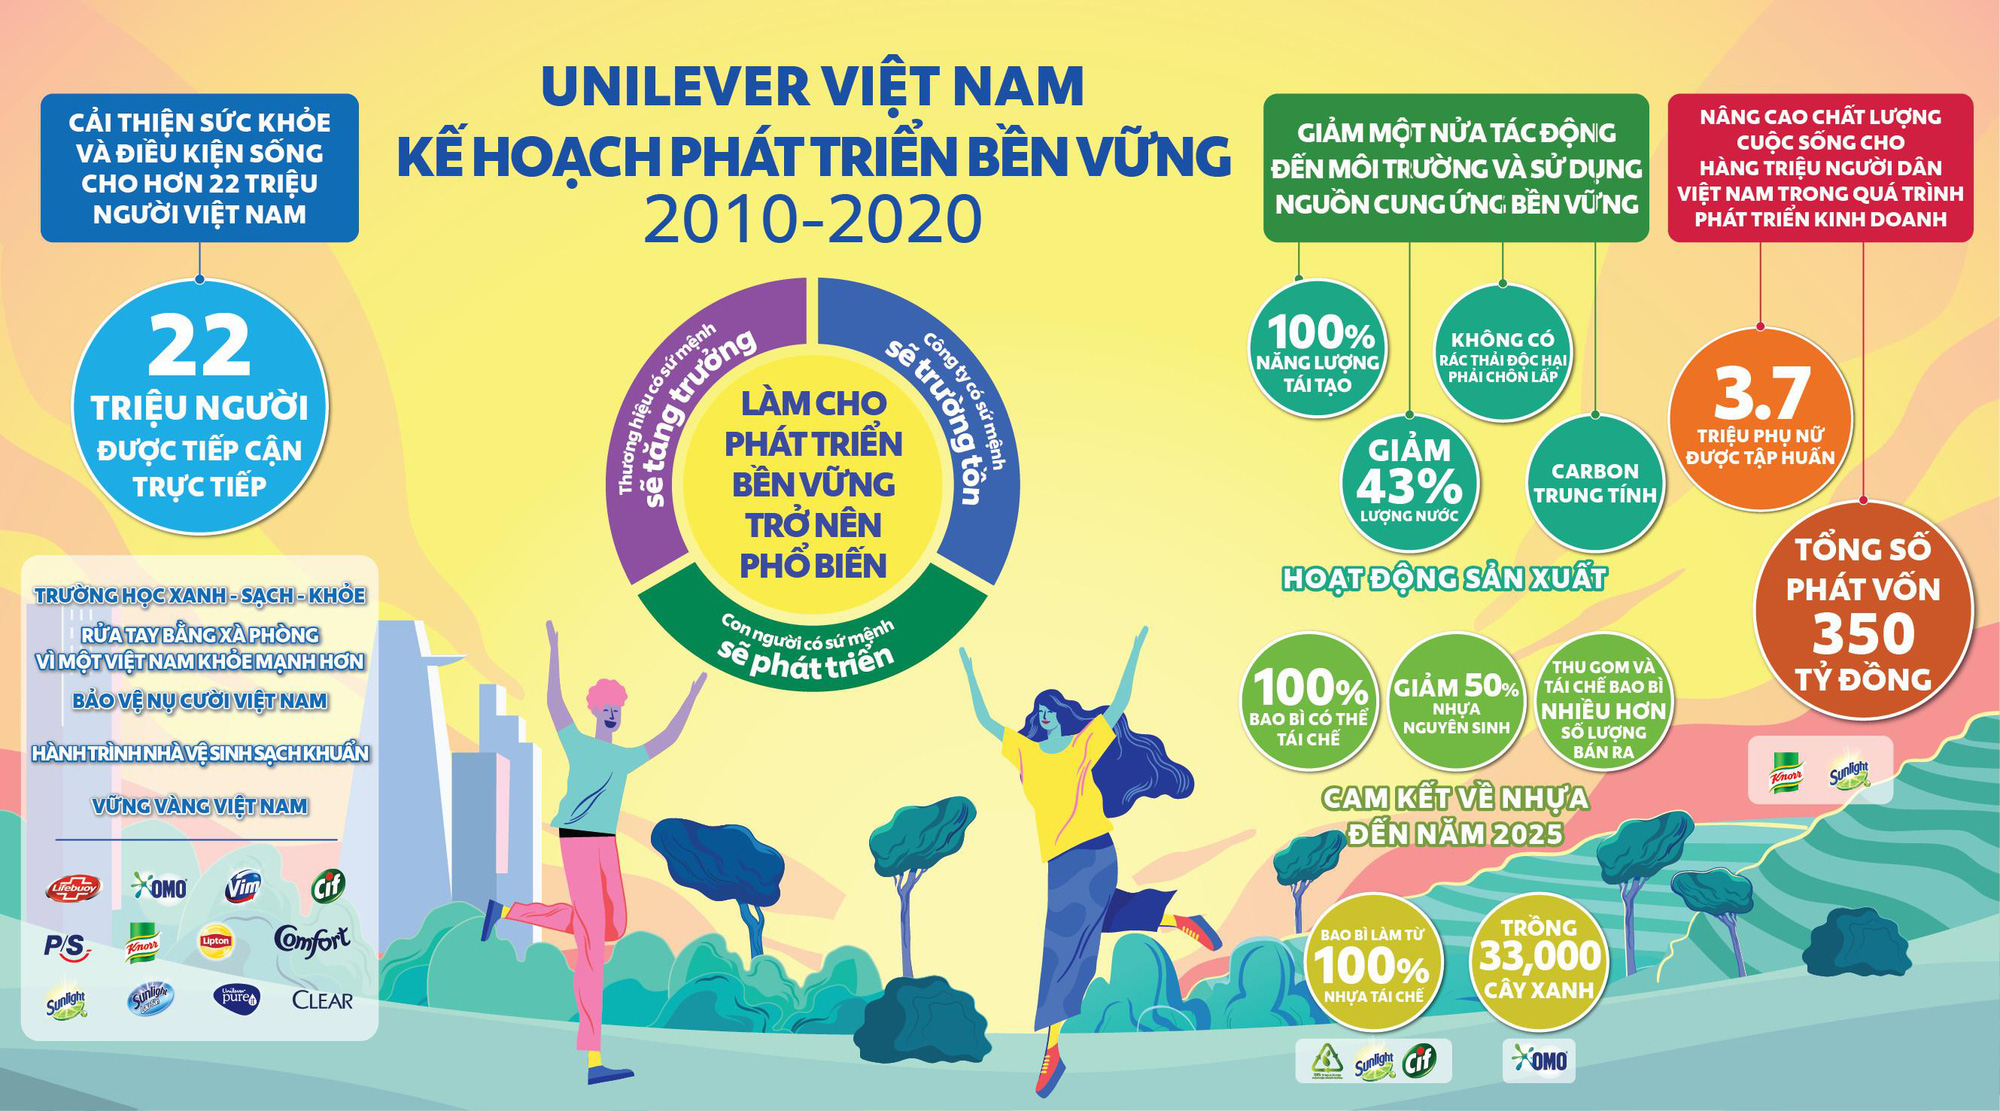 Zero Waste in Supply Chain  Bí mật giúp Unilever liên tục giữ vững vị  trí dẫn đầu trong ngành công nghiệp Chuỗi Cung ứng VILAS